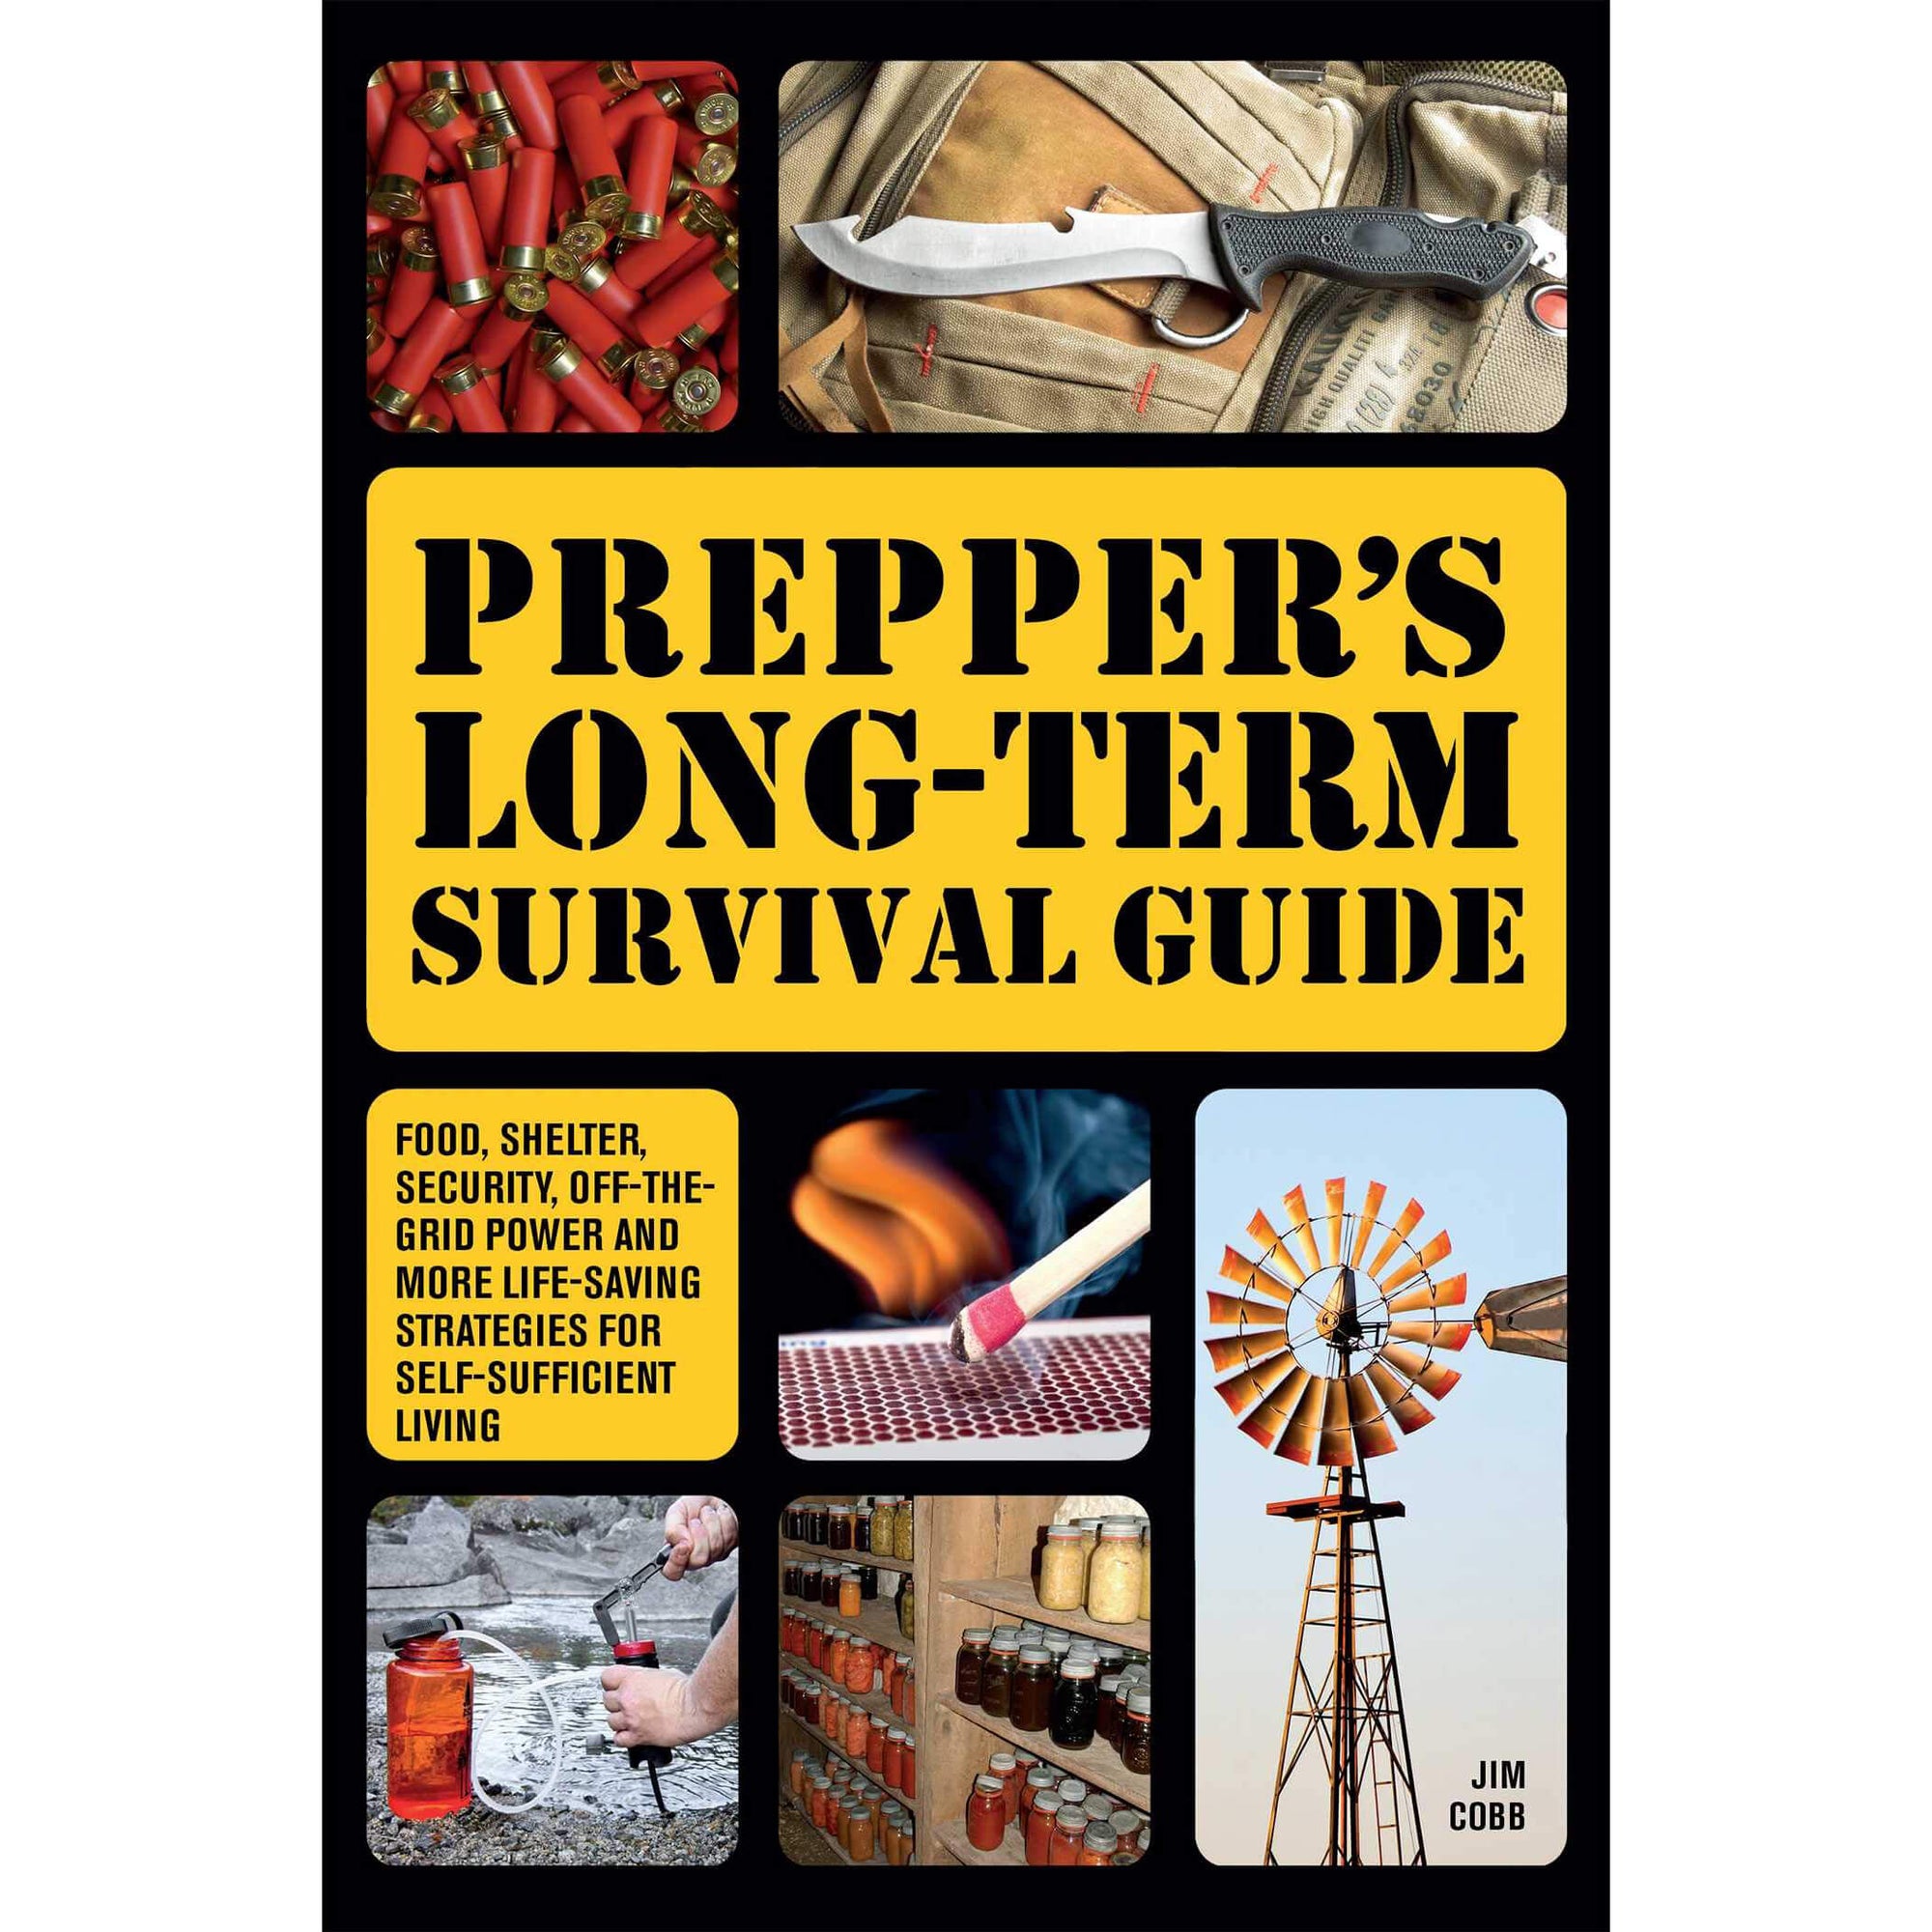 Prepper's Long-term Survival Guide front cover.